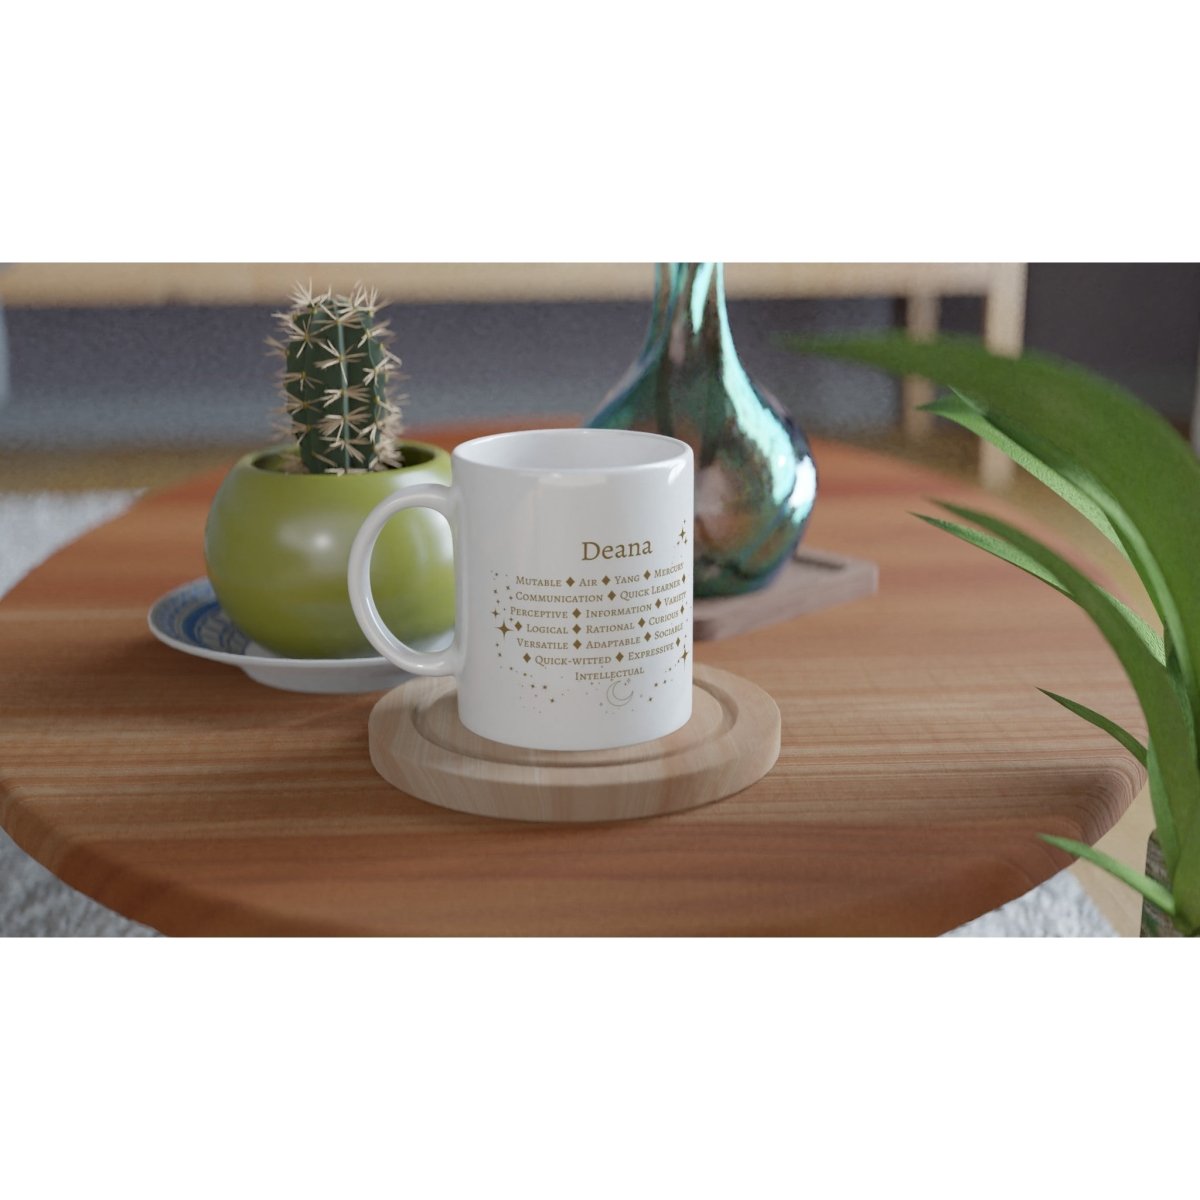 Gemini Zodiac Personalized Mug - White 11oz Ceramic Mug - Astrology House